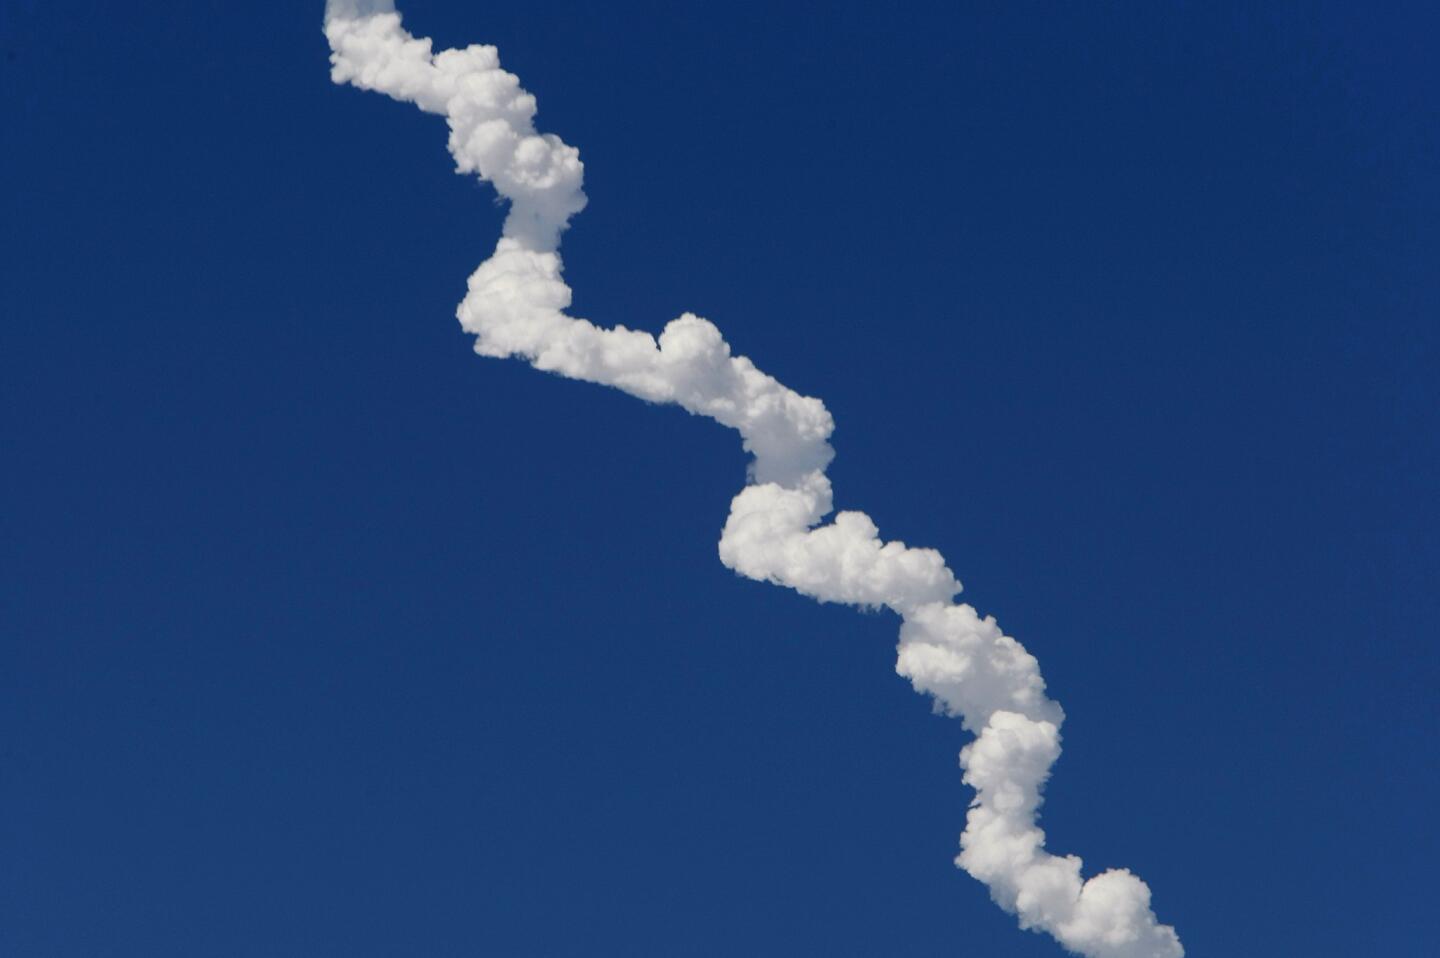 Delta IV Heavy rocket